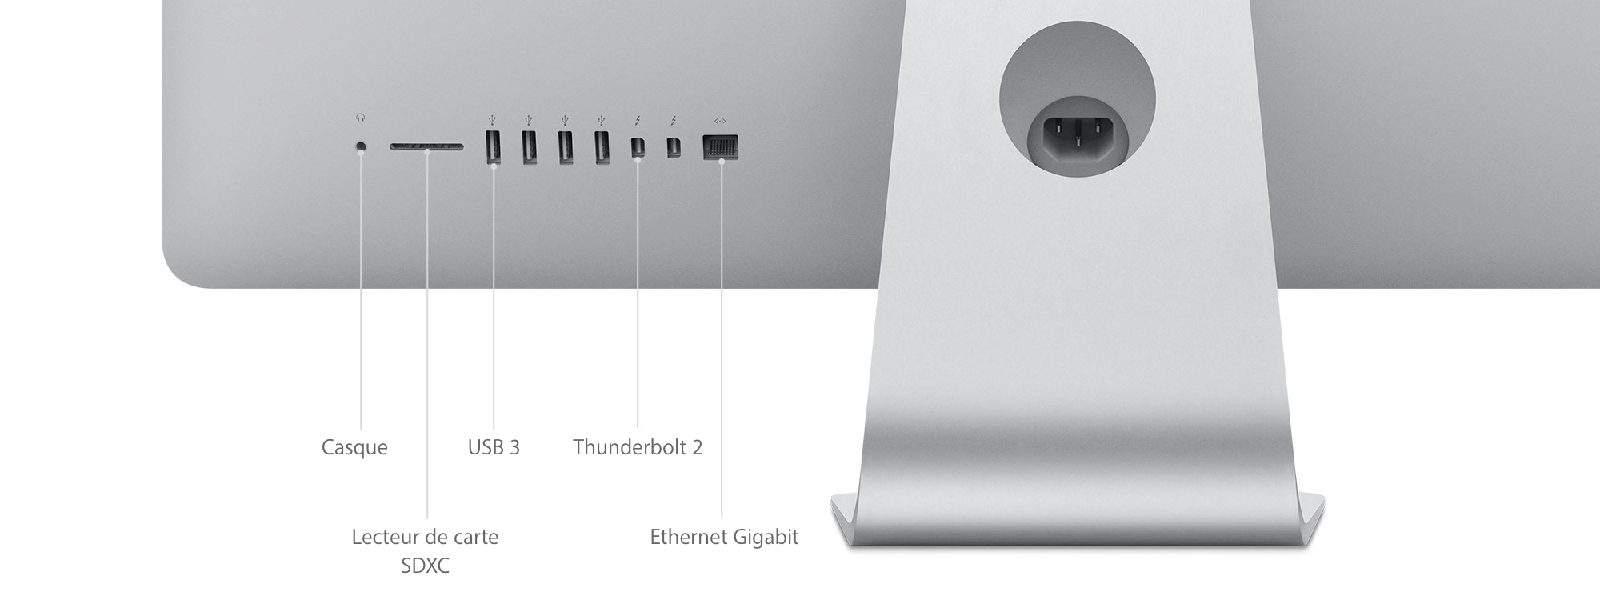 iMac (Retina 5K, 27 pouces, fin 2015) - Caractéristiques techniques (CH)